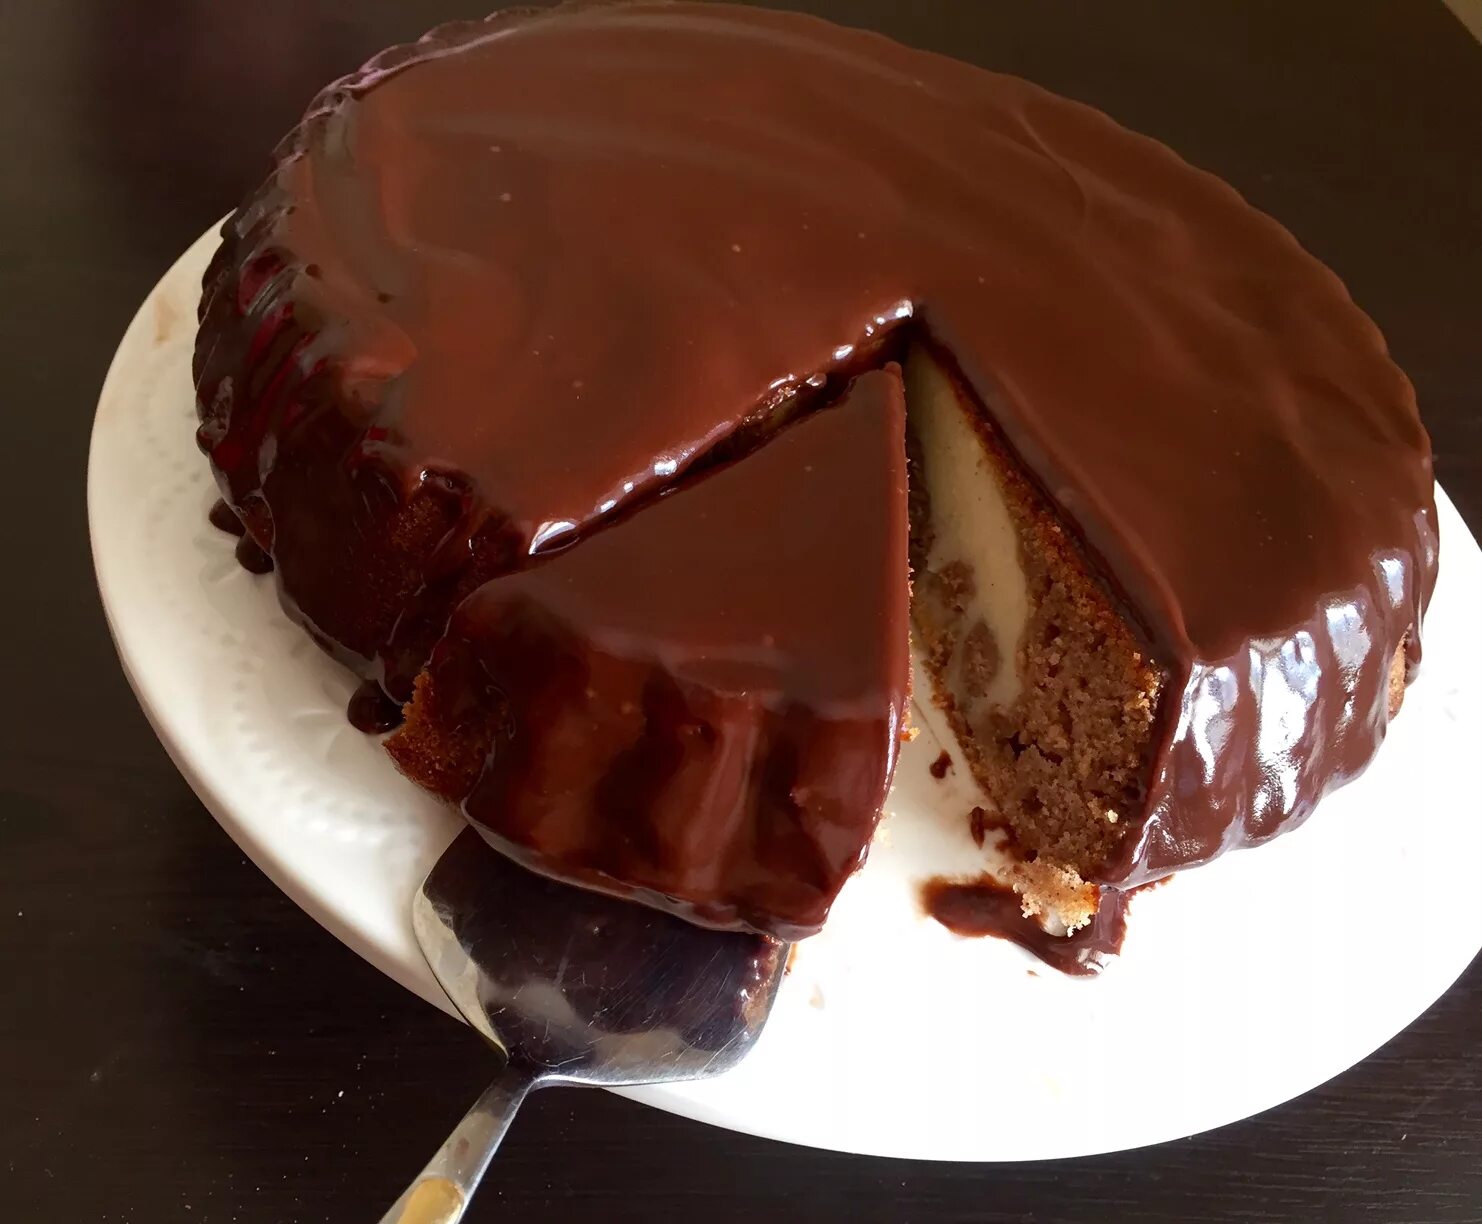 Пирог с шоколадной глазурью. Торт с шоколадной глазурью. Кекс с шоколадной глазурью. Шоколадный пирог с шоколадной глазурью. Шоколадную глазурь отзывы